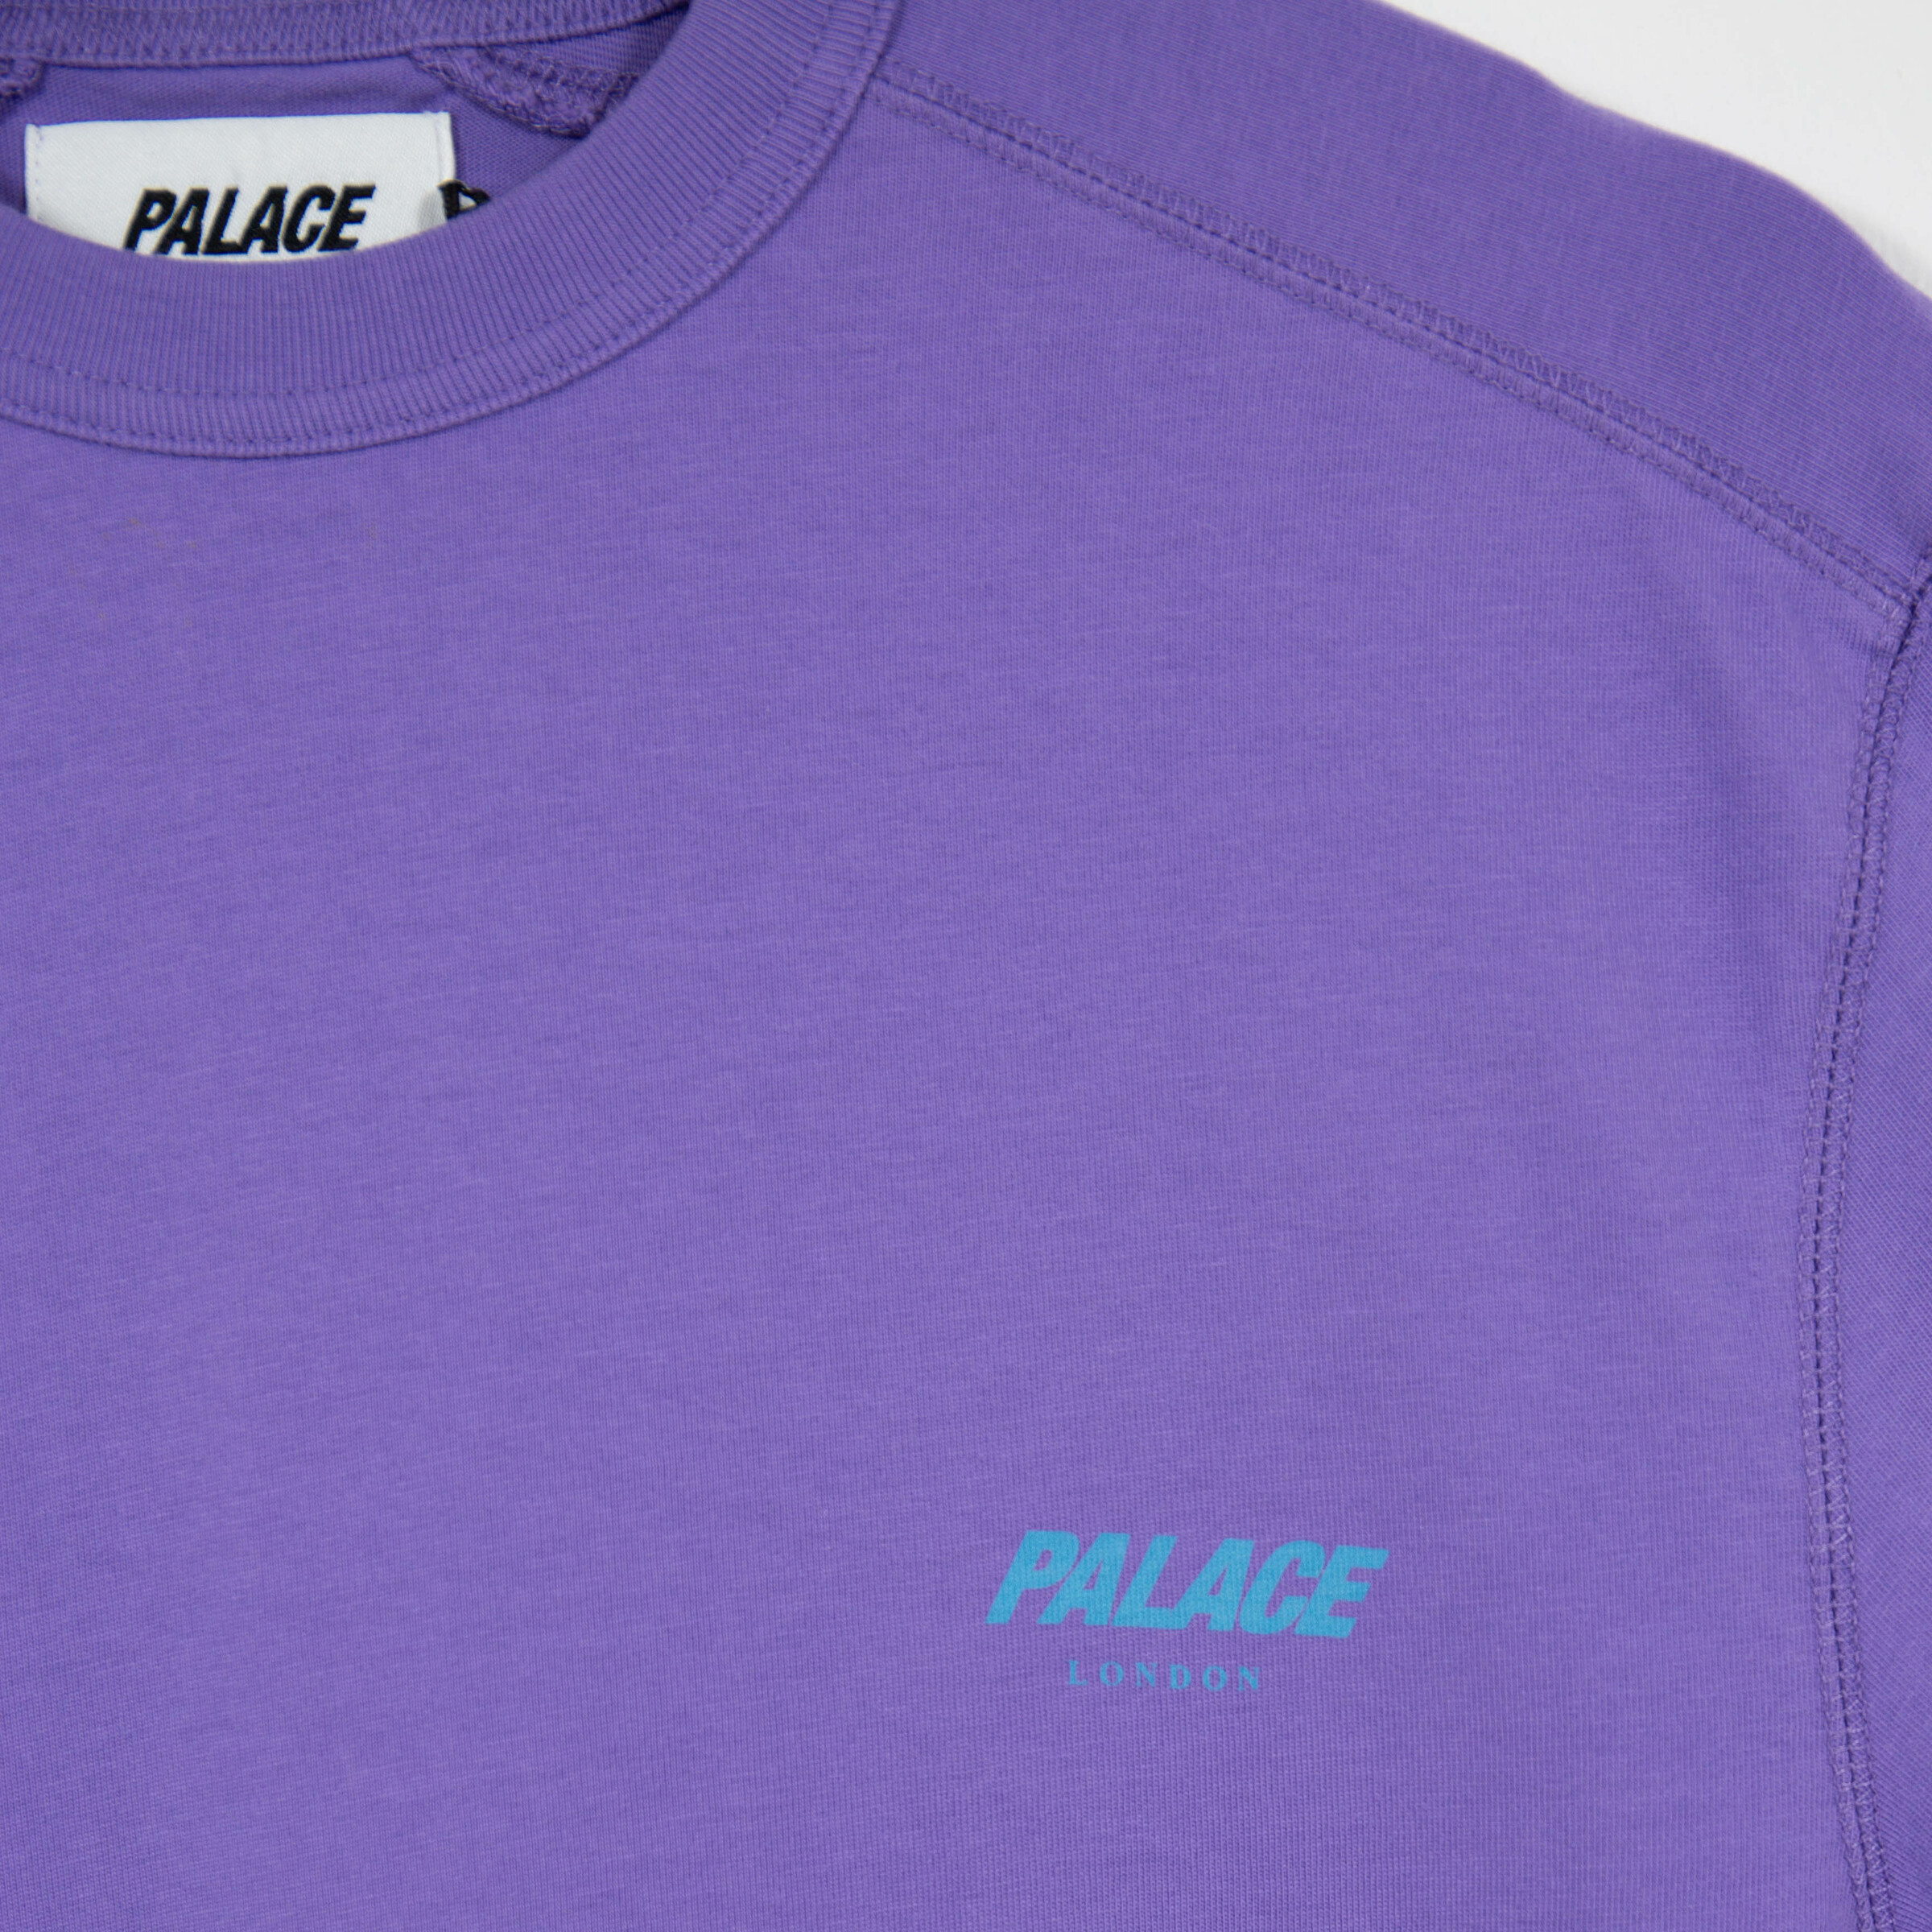 Palace P Cycle T-shirt Purple